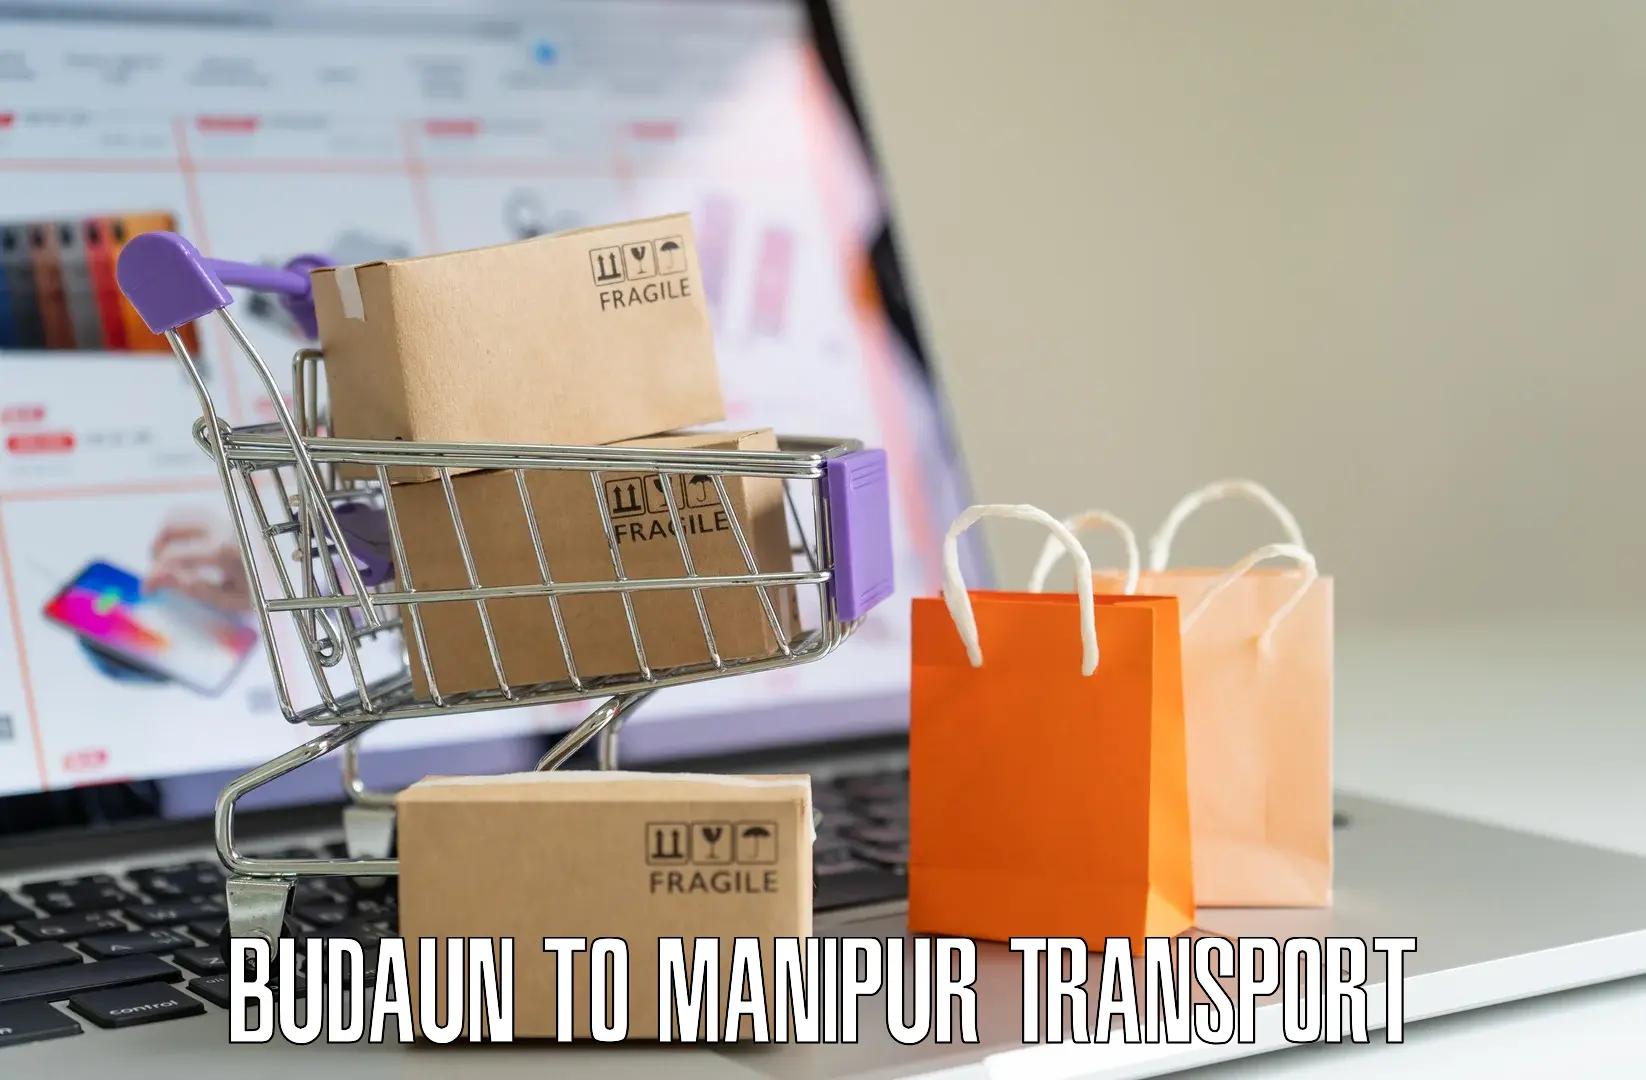 Furniture transport service Budaun to Moirang